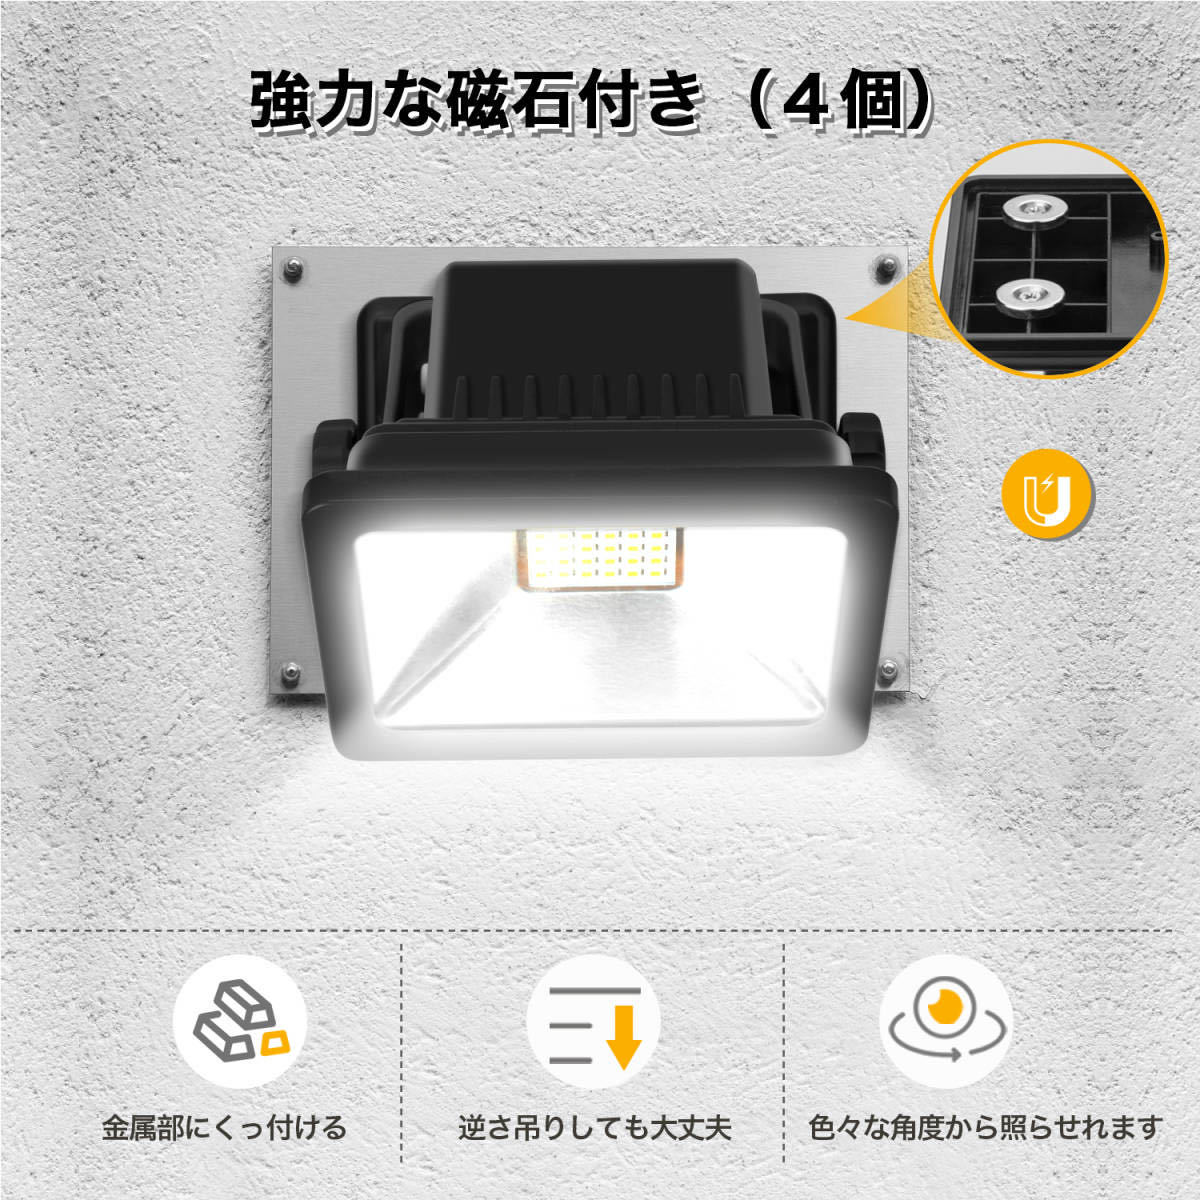 LED прожектор    перезаряжаемый  ... сетка 30W  портативный   прожектор   3 ступень  ... свет   вне помещения  led LED работа  .../ Work  light /... рыба  ... ...  складной ... ... IP65 водонепроницаемый 